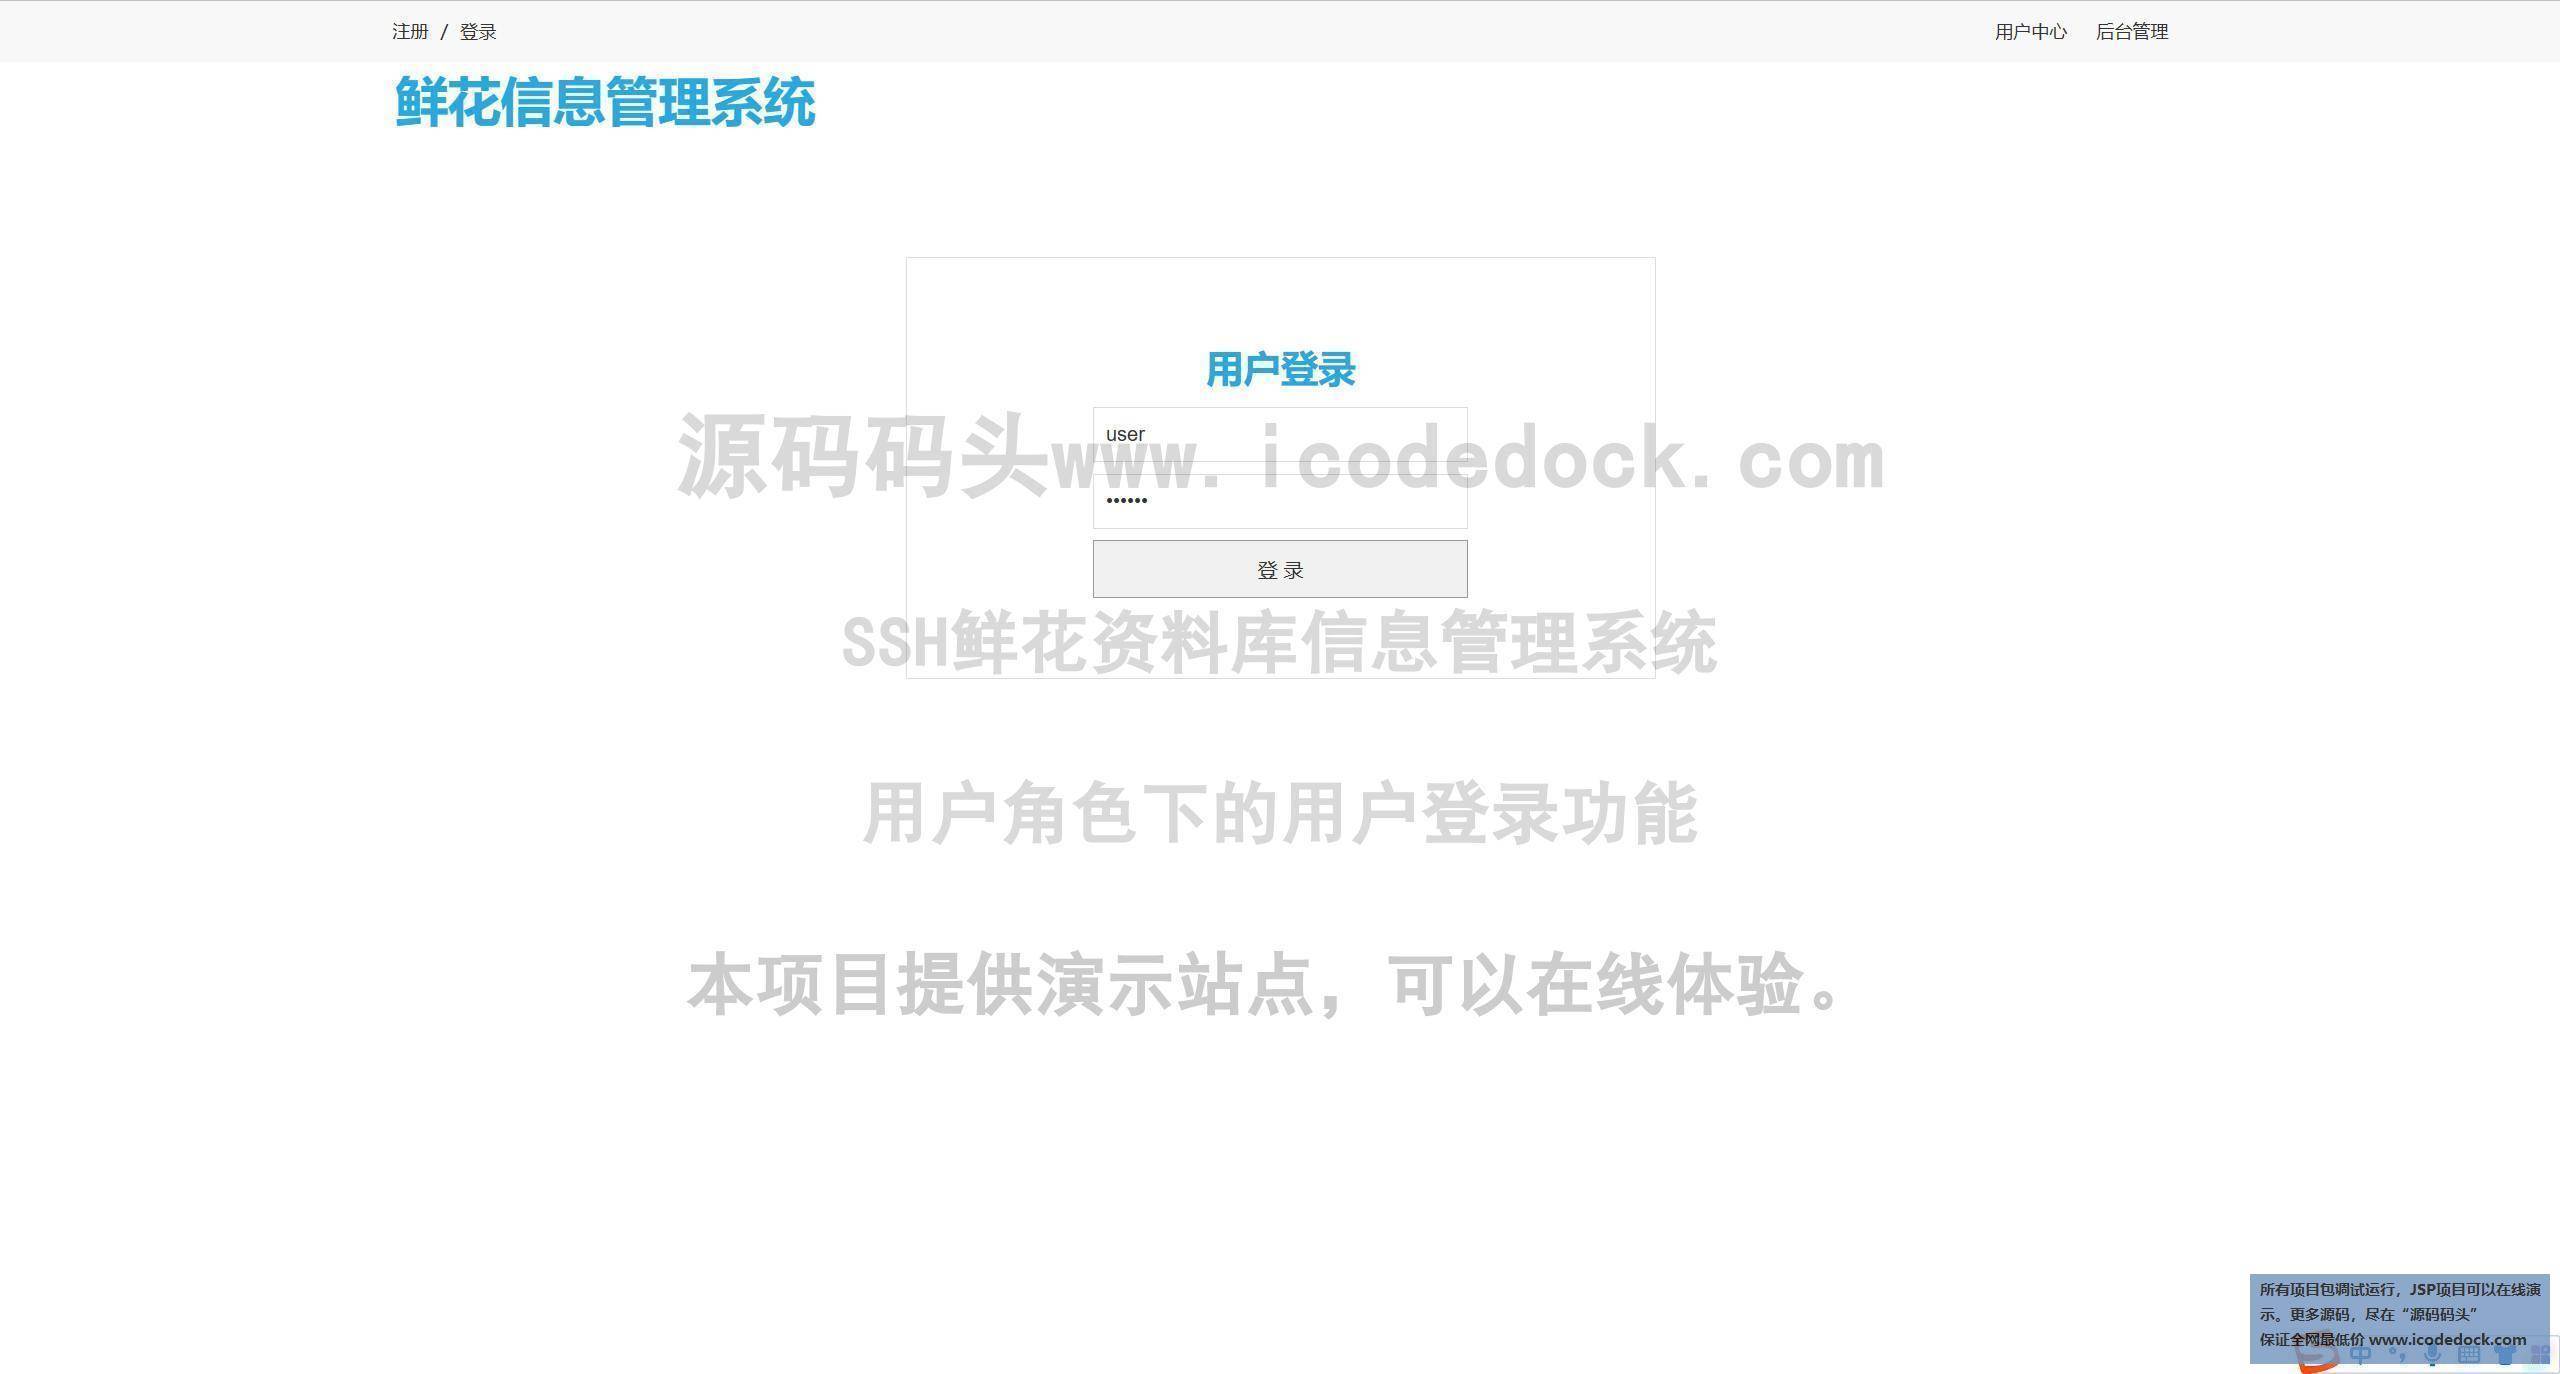 源码码头-SSH鲜花资料库信息管理系统-用户角色-用户登录